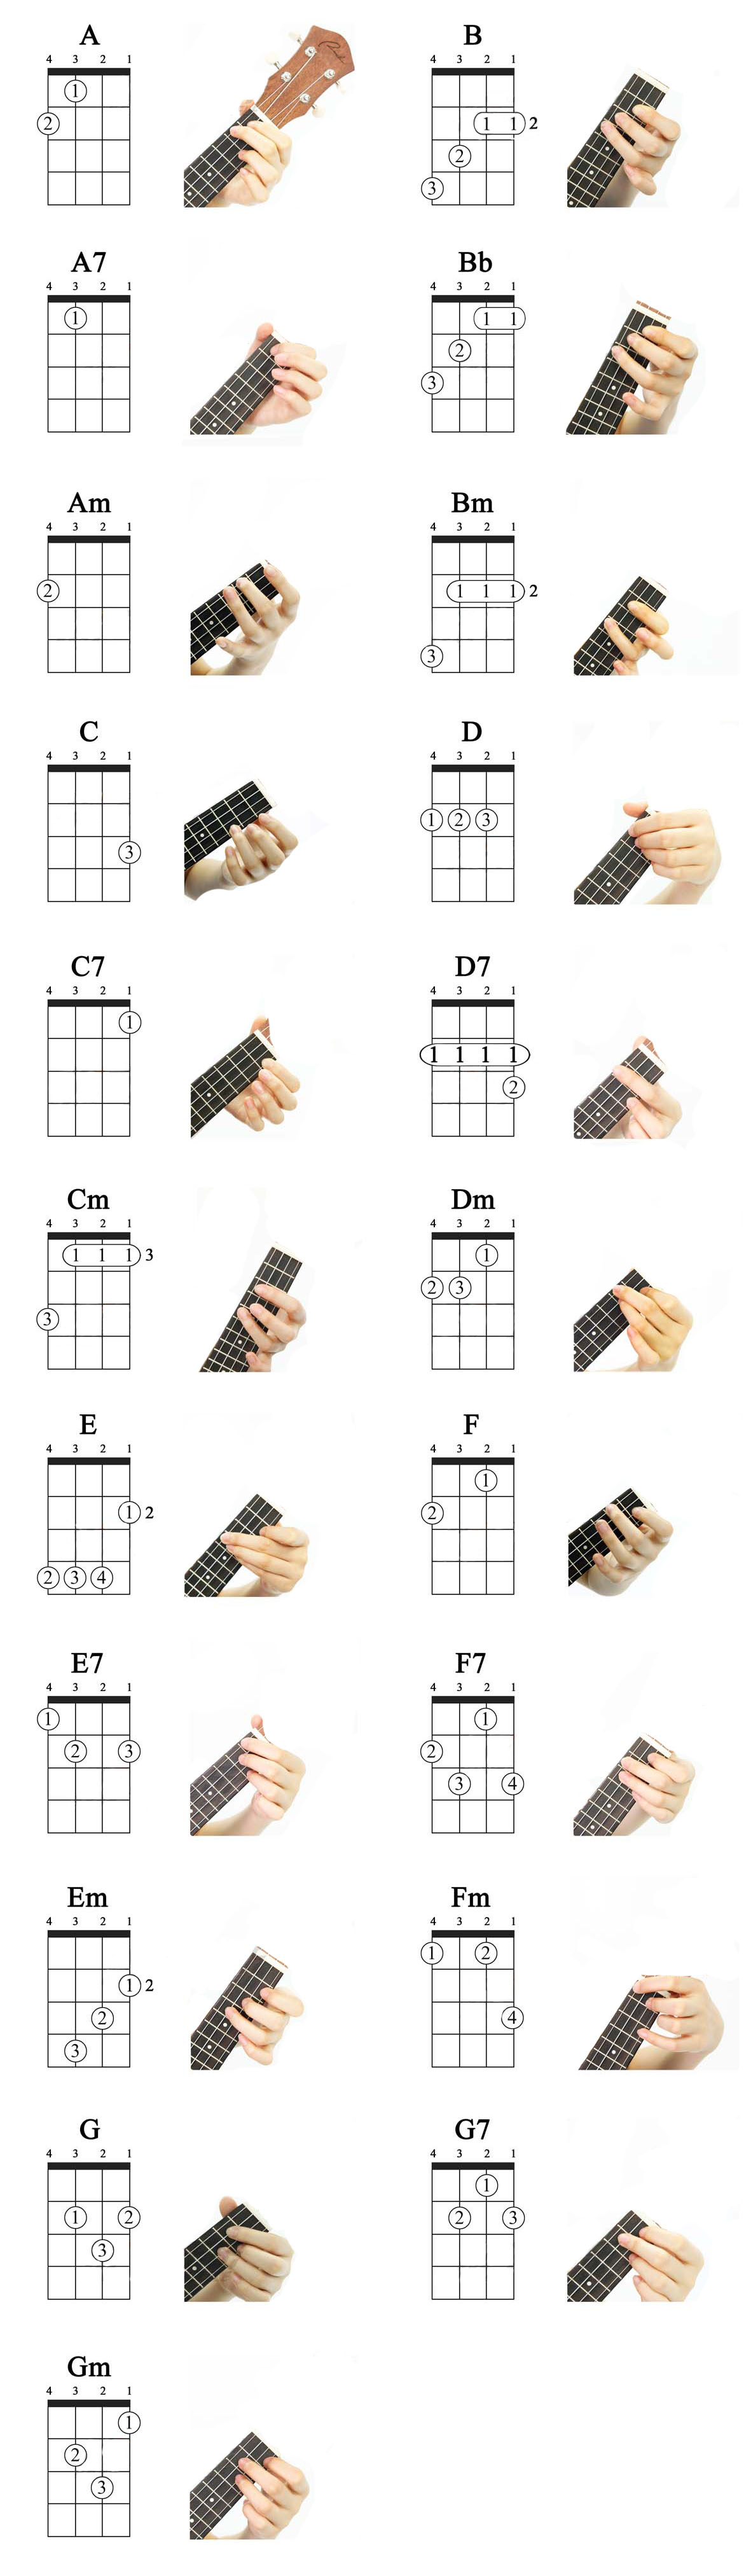 ziemlich-bauen-auf-vertreten-basic-ukulele-chords-verfolgung-gr-ndlich